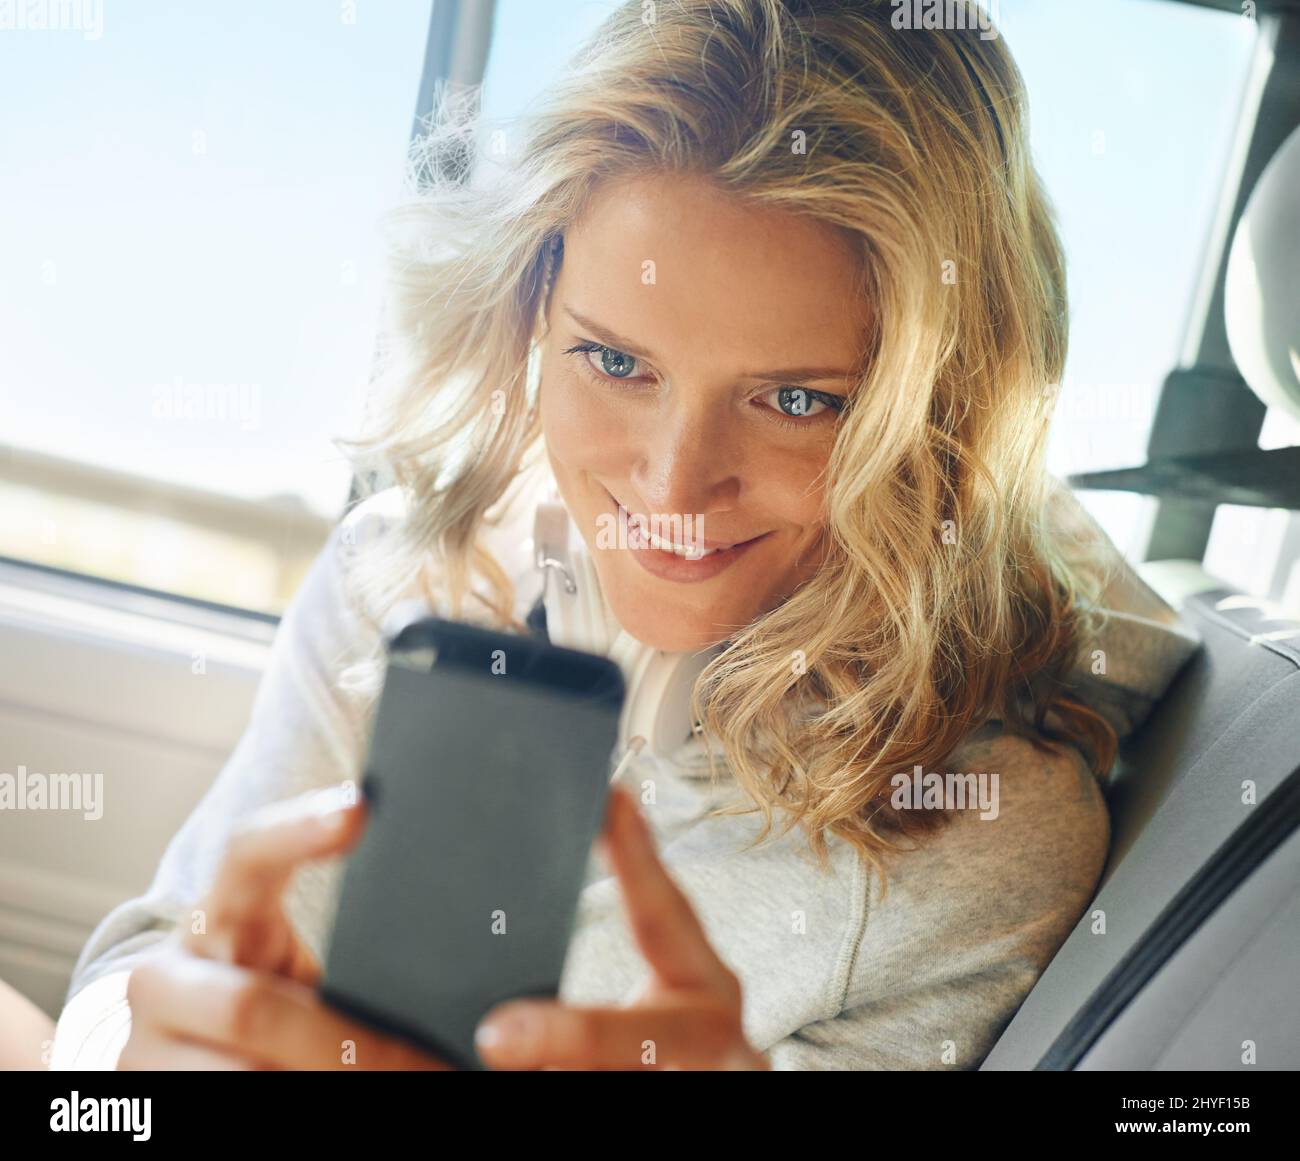 Prise d'une photo rapide. Photo d'une fille souriante prenant un autoportrait sur son téléphone alors qu'elle est assise dans sa voiture. Banque D'Images